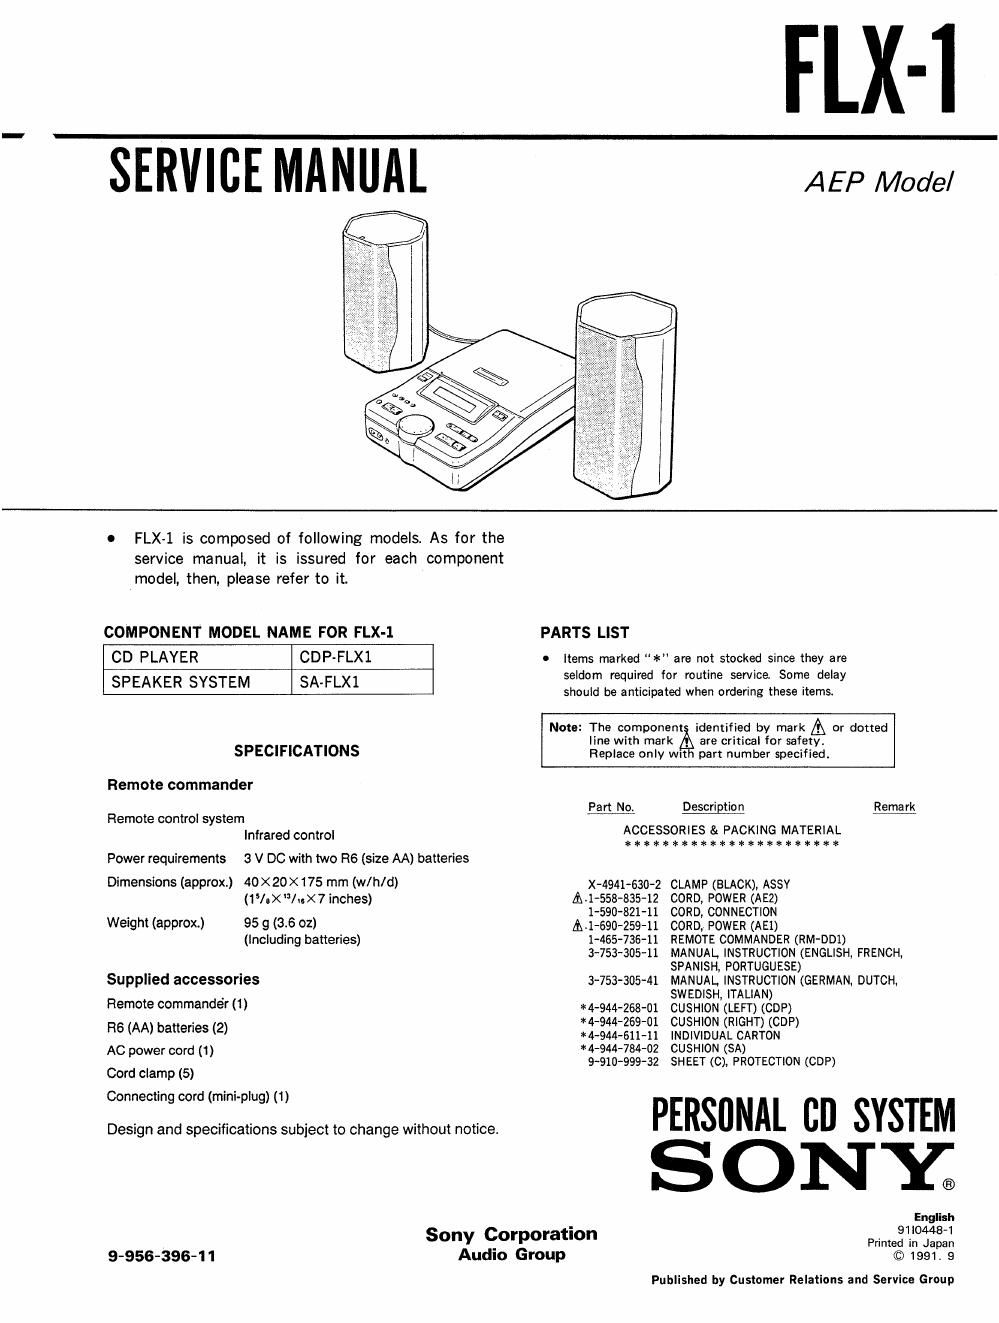 sony flx 1 service manual